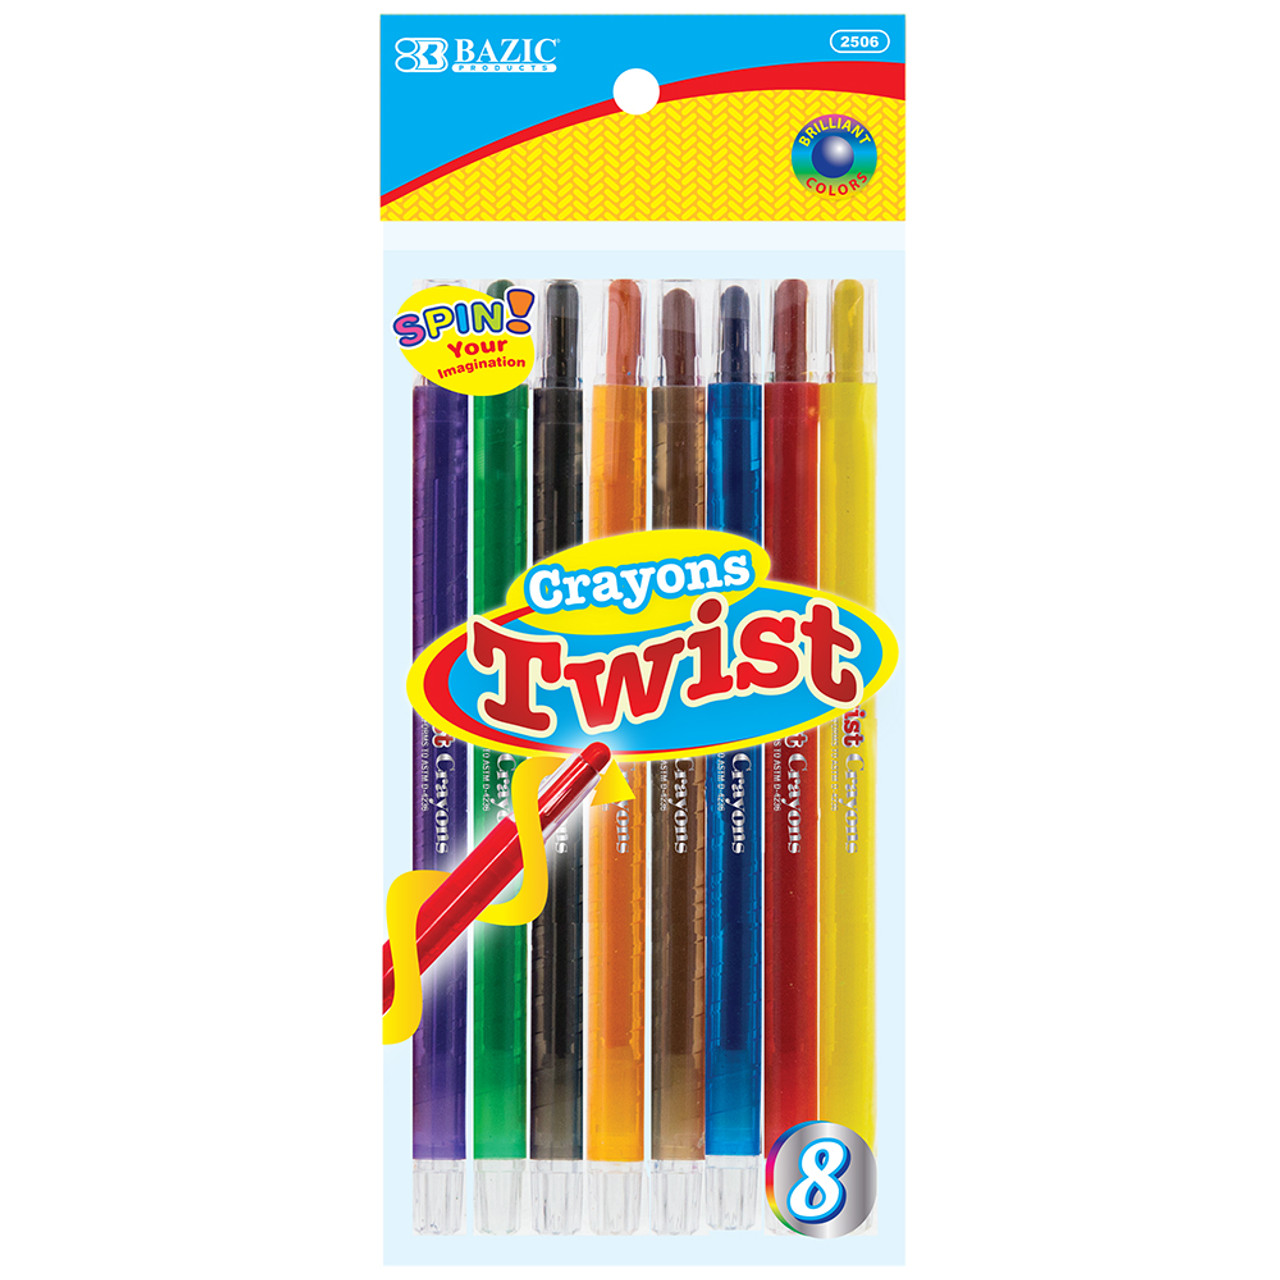 BAZIC 8 Color Premium Crayons Bazic Products